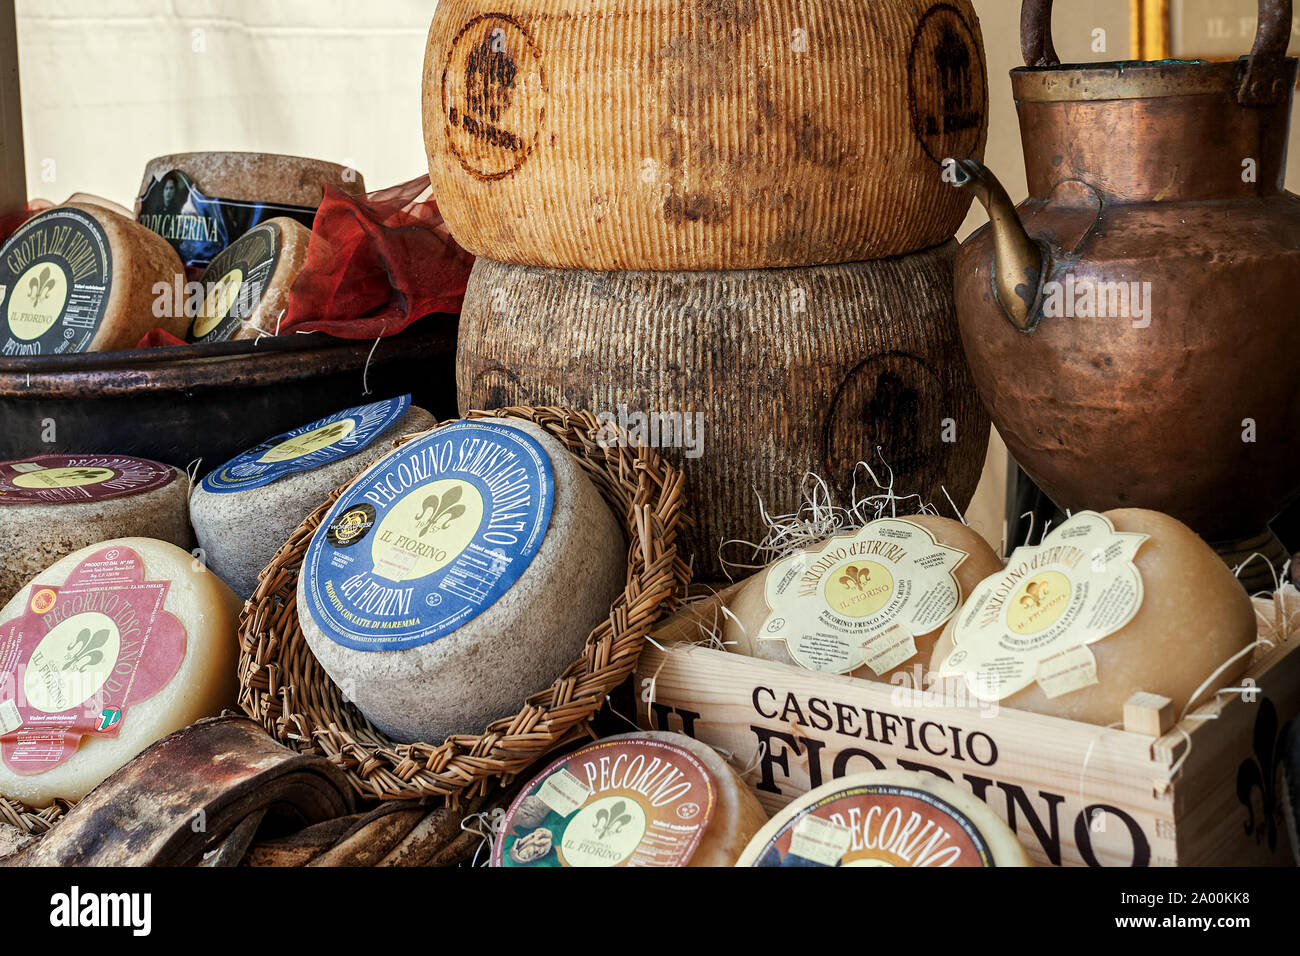 BRA, ITALIE - 18 septembre. 2015 : différents types de fumé artisanal fort et fromage de brebis sur la bloquer en cours International Cheese traditionnel Marke Banque D'Images